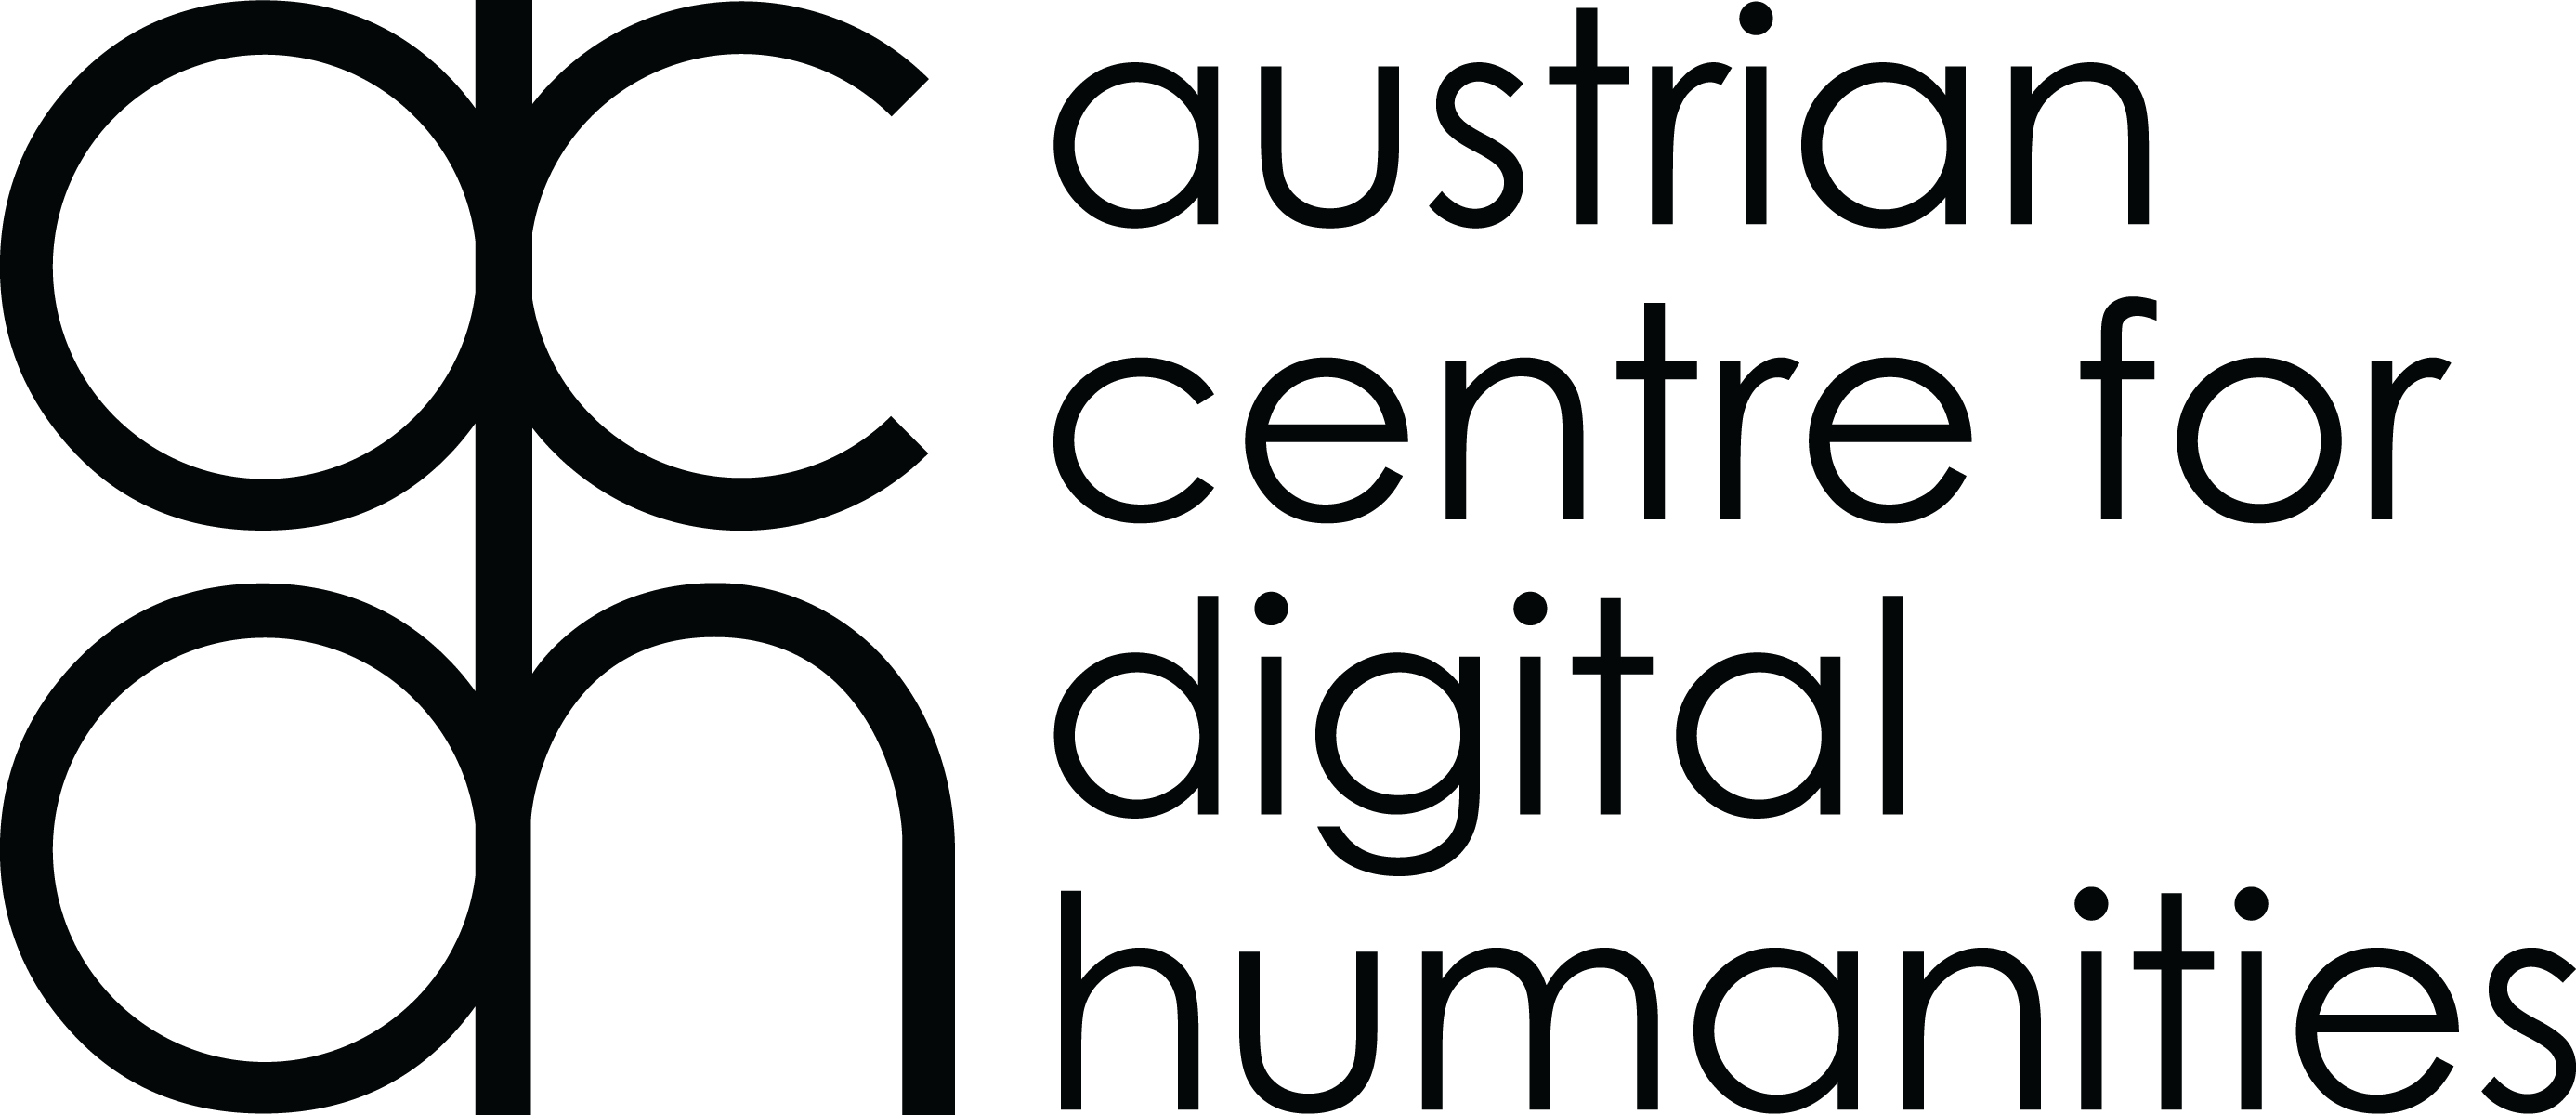 ÖAW - Austrian Center for Digital Humanities